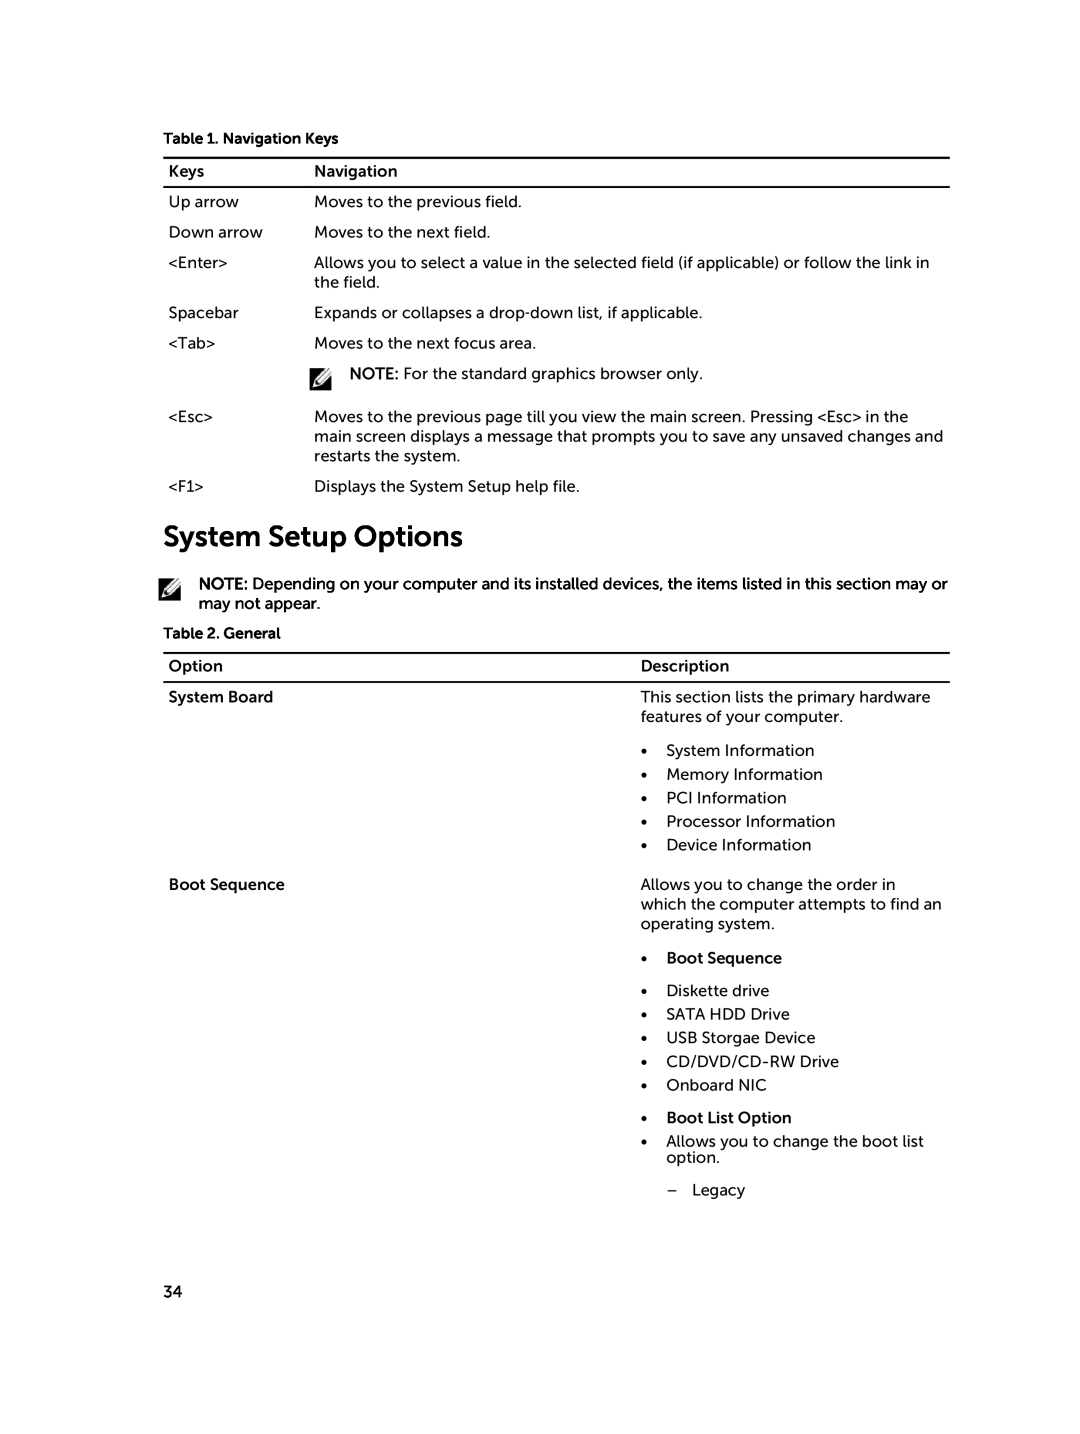 Dell D15M owner manual System Setup Options, Navigation Keys, General 